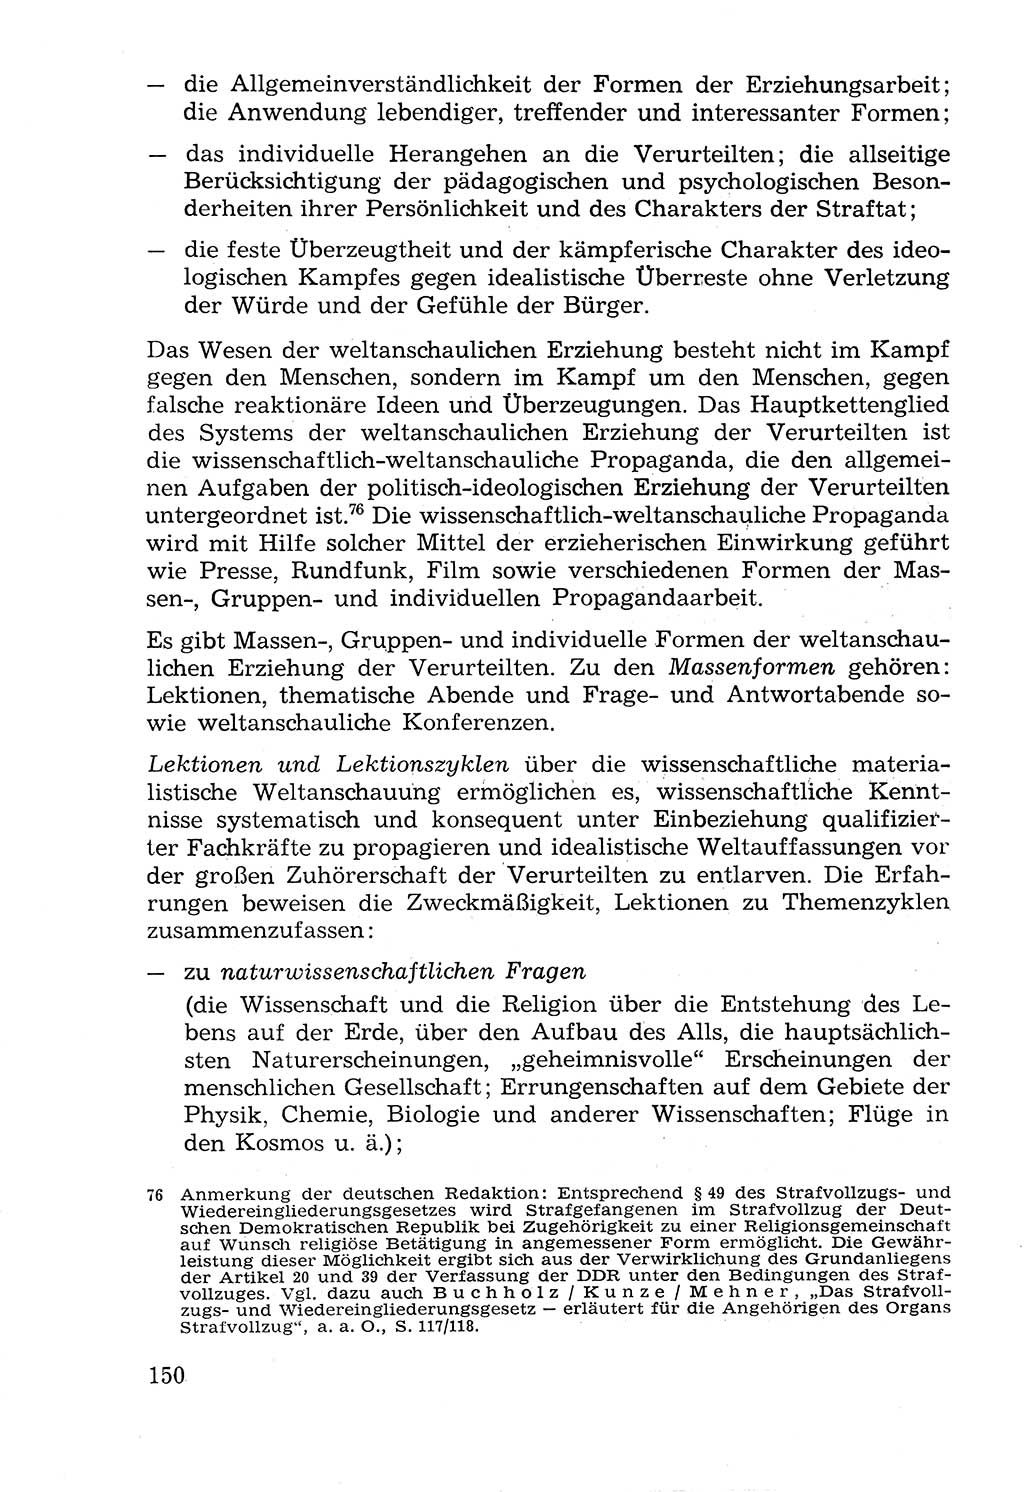 Lehrbuch der Strafvollzugspädagogik [Deutsche Demokratische Republik (DDR)] 1969, Seite 150 (Lb. SV-Pd. DDR 1969, S. 150)